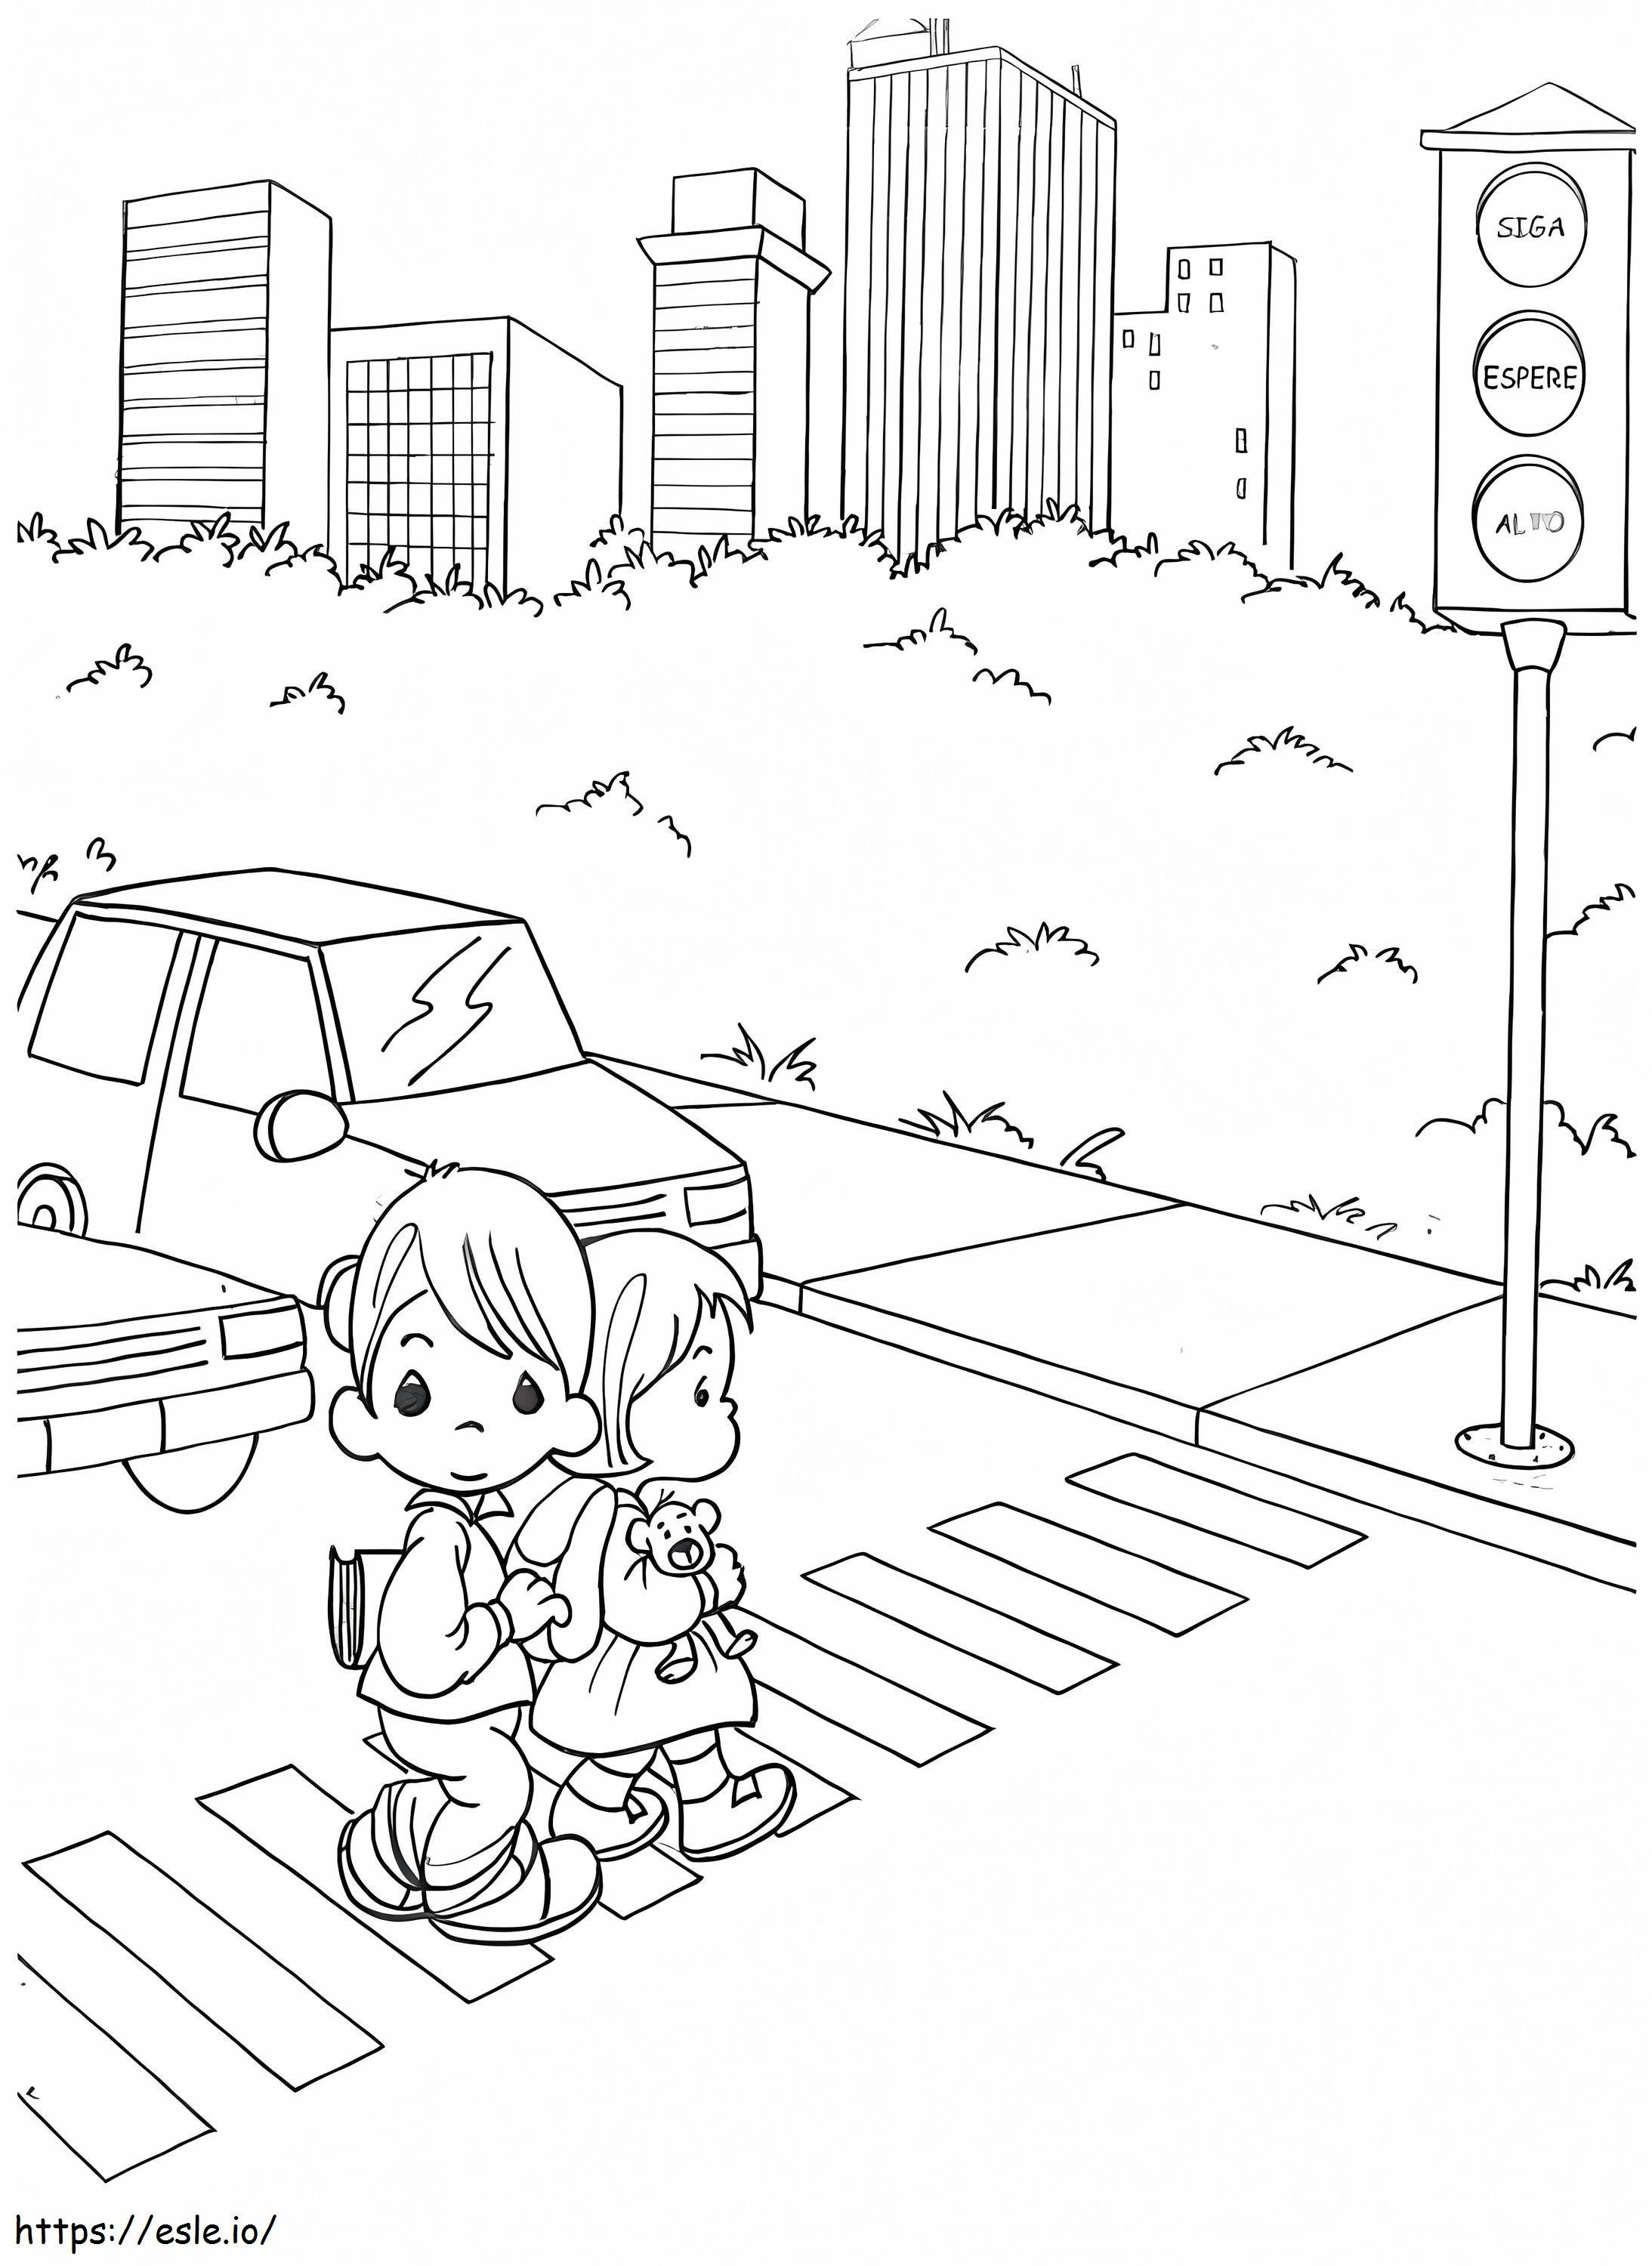 Yürüyen İki Çocuk Ve Trafik Işığı boyama